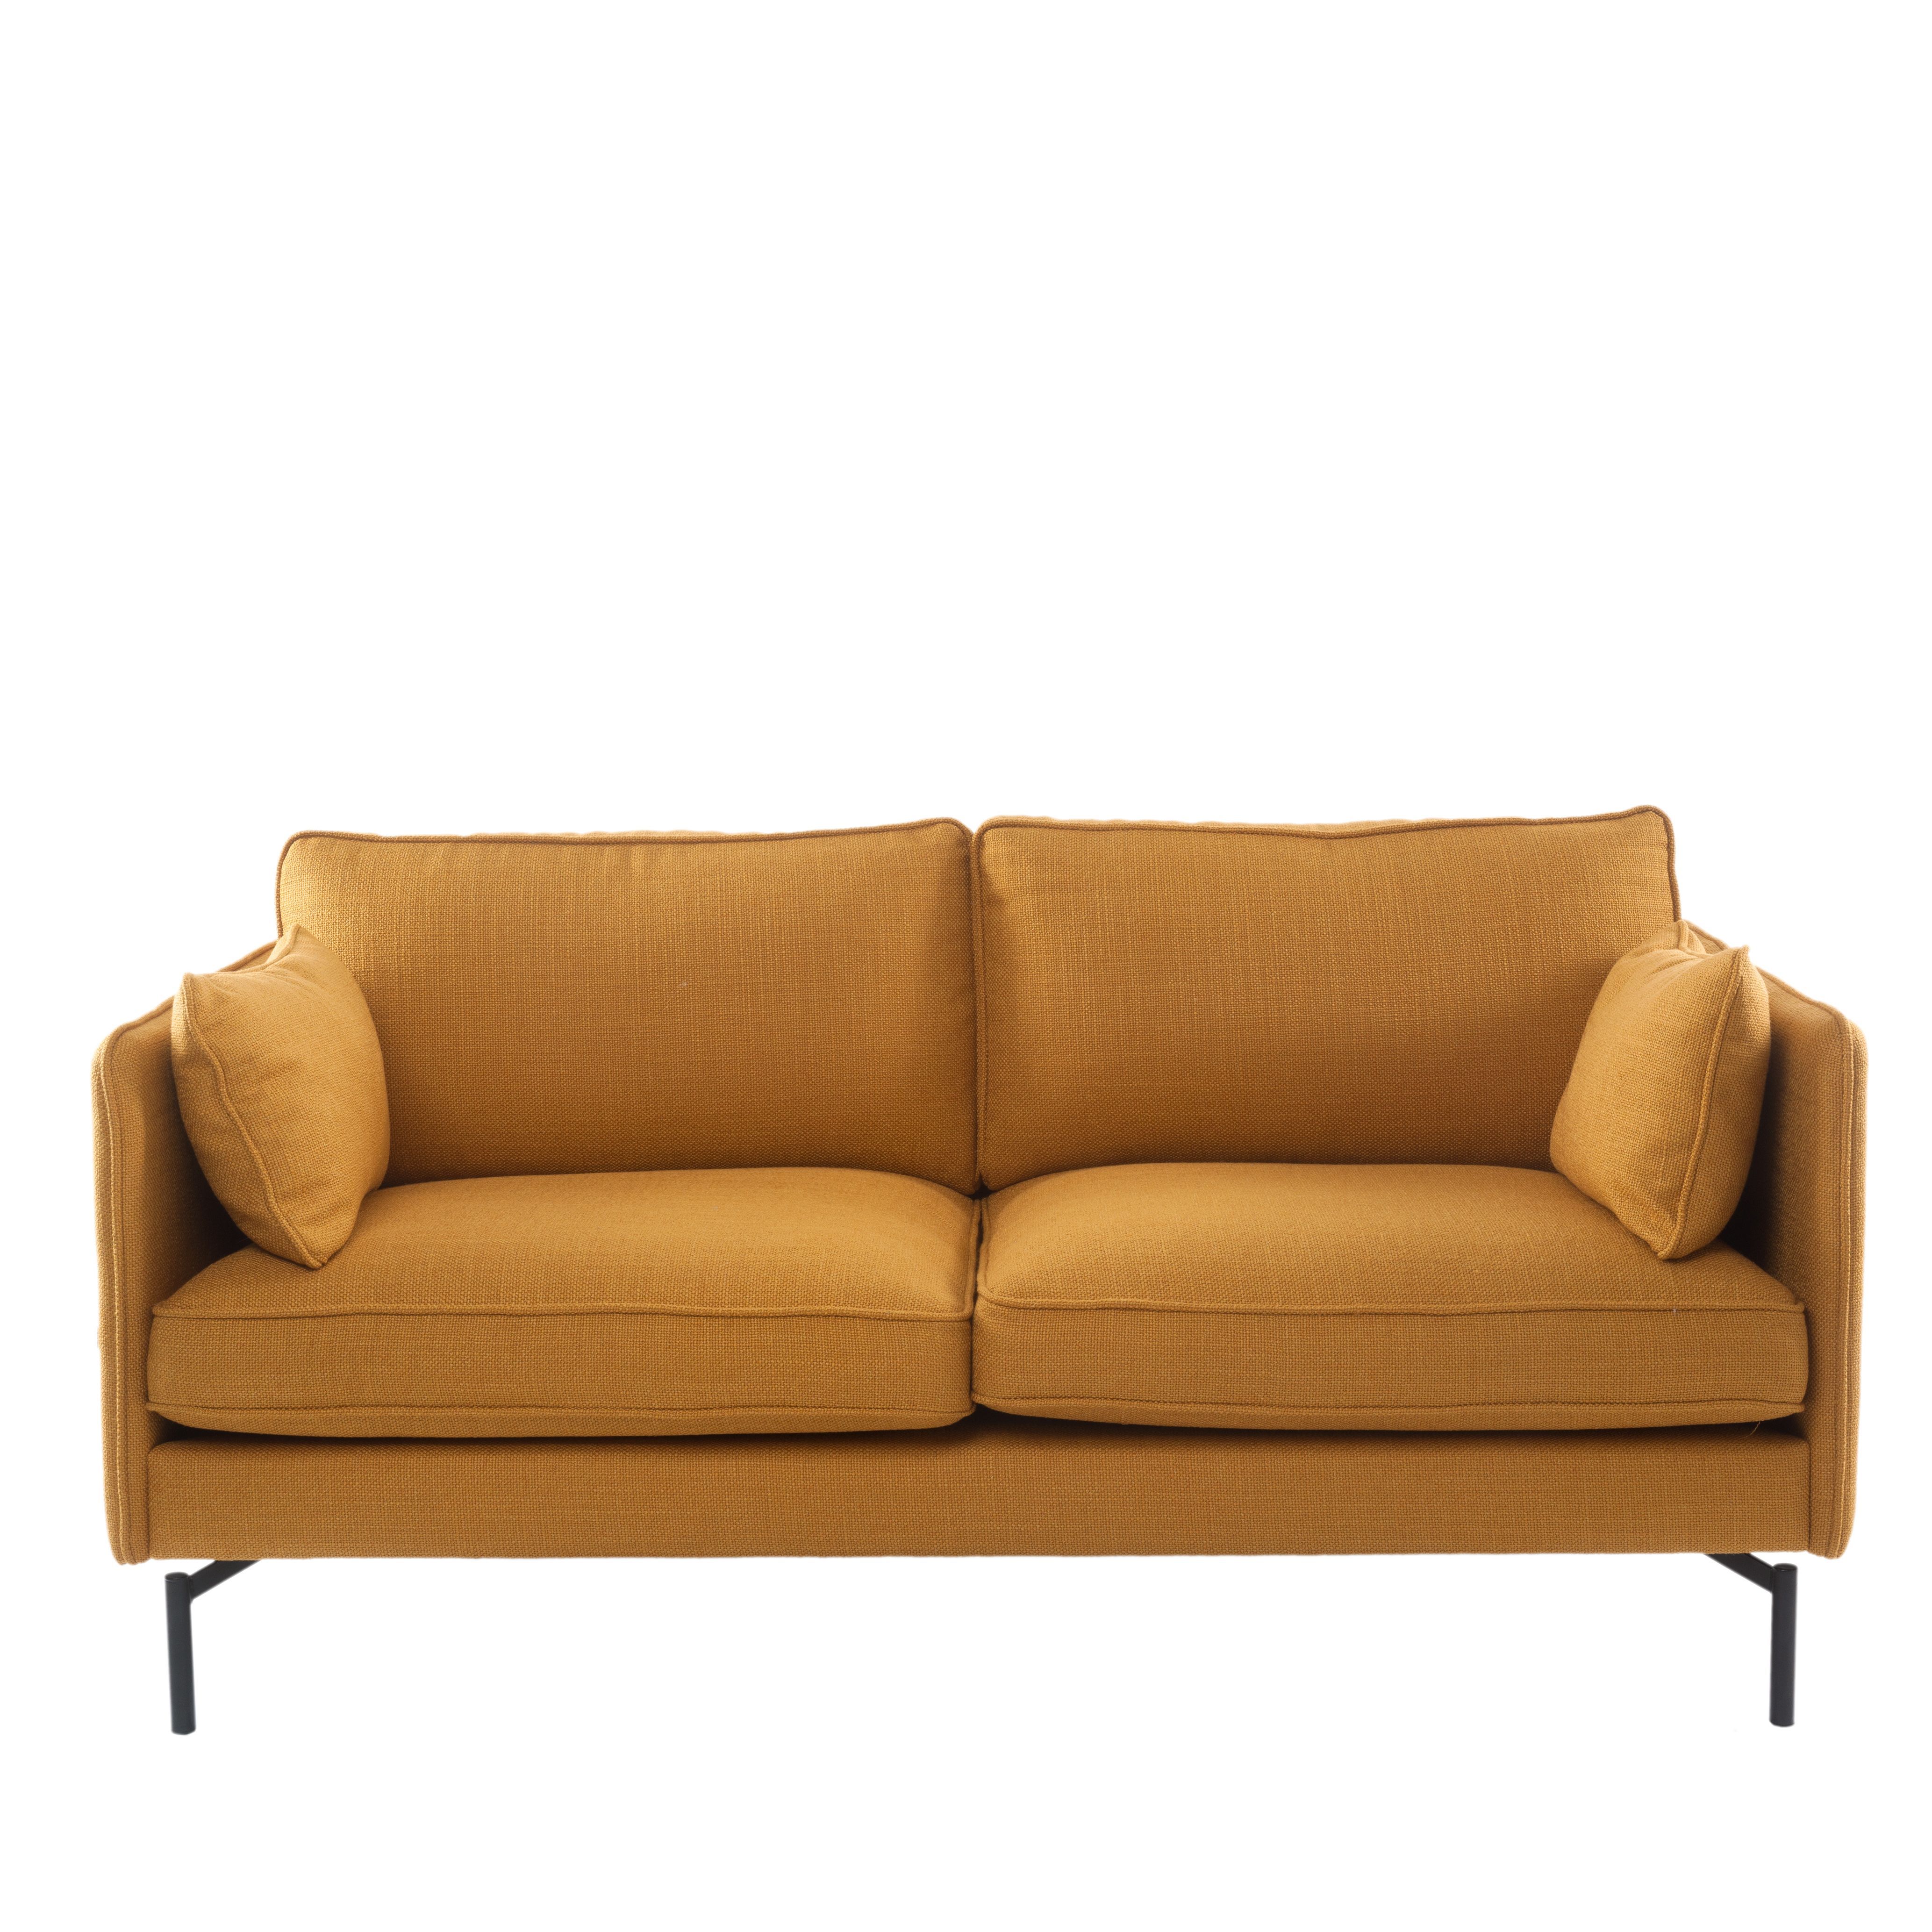 Sofa PPno.2 by Pols Potten